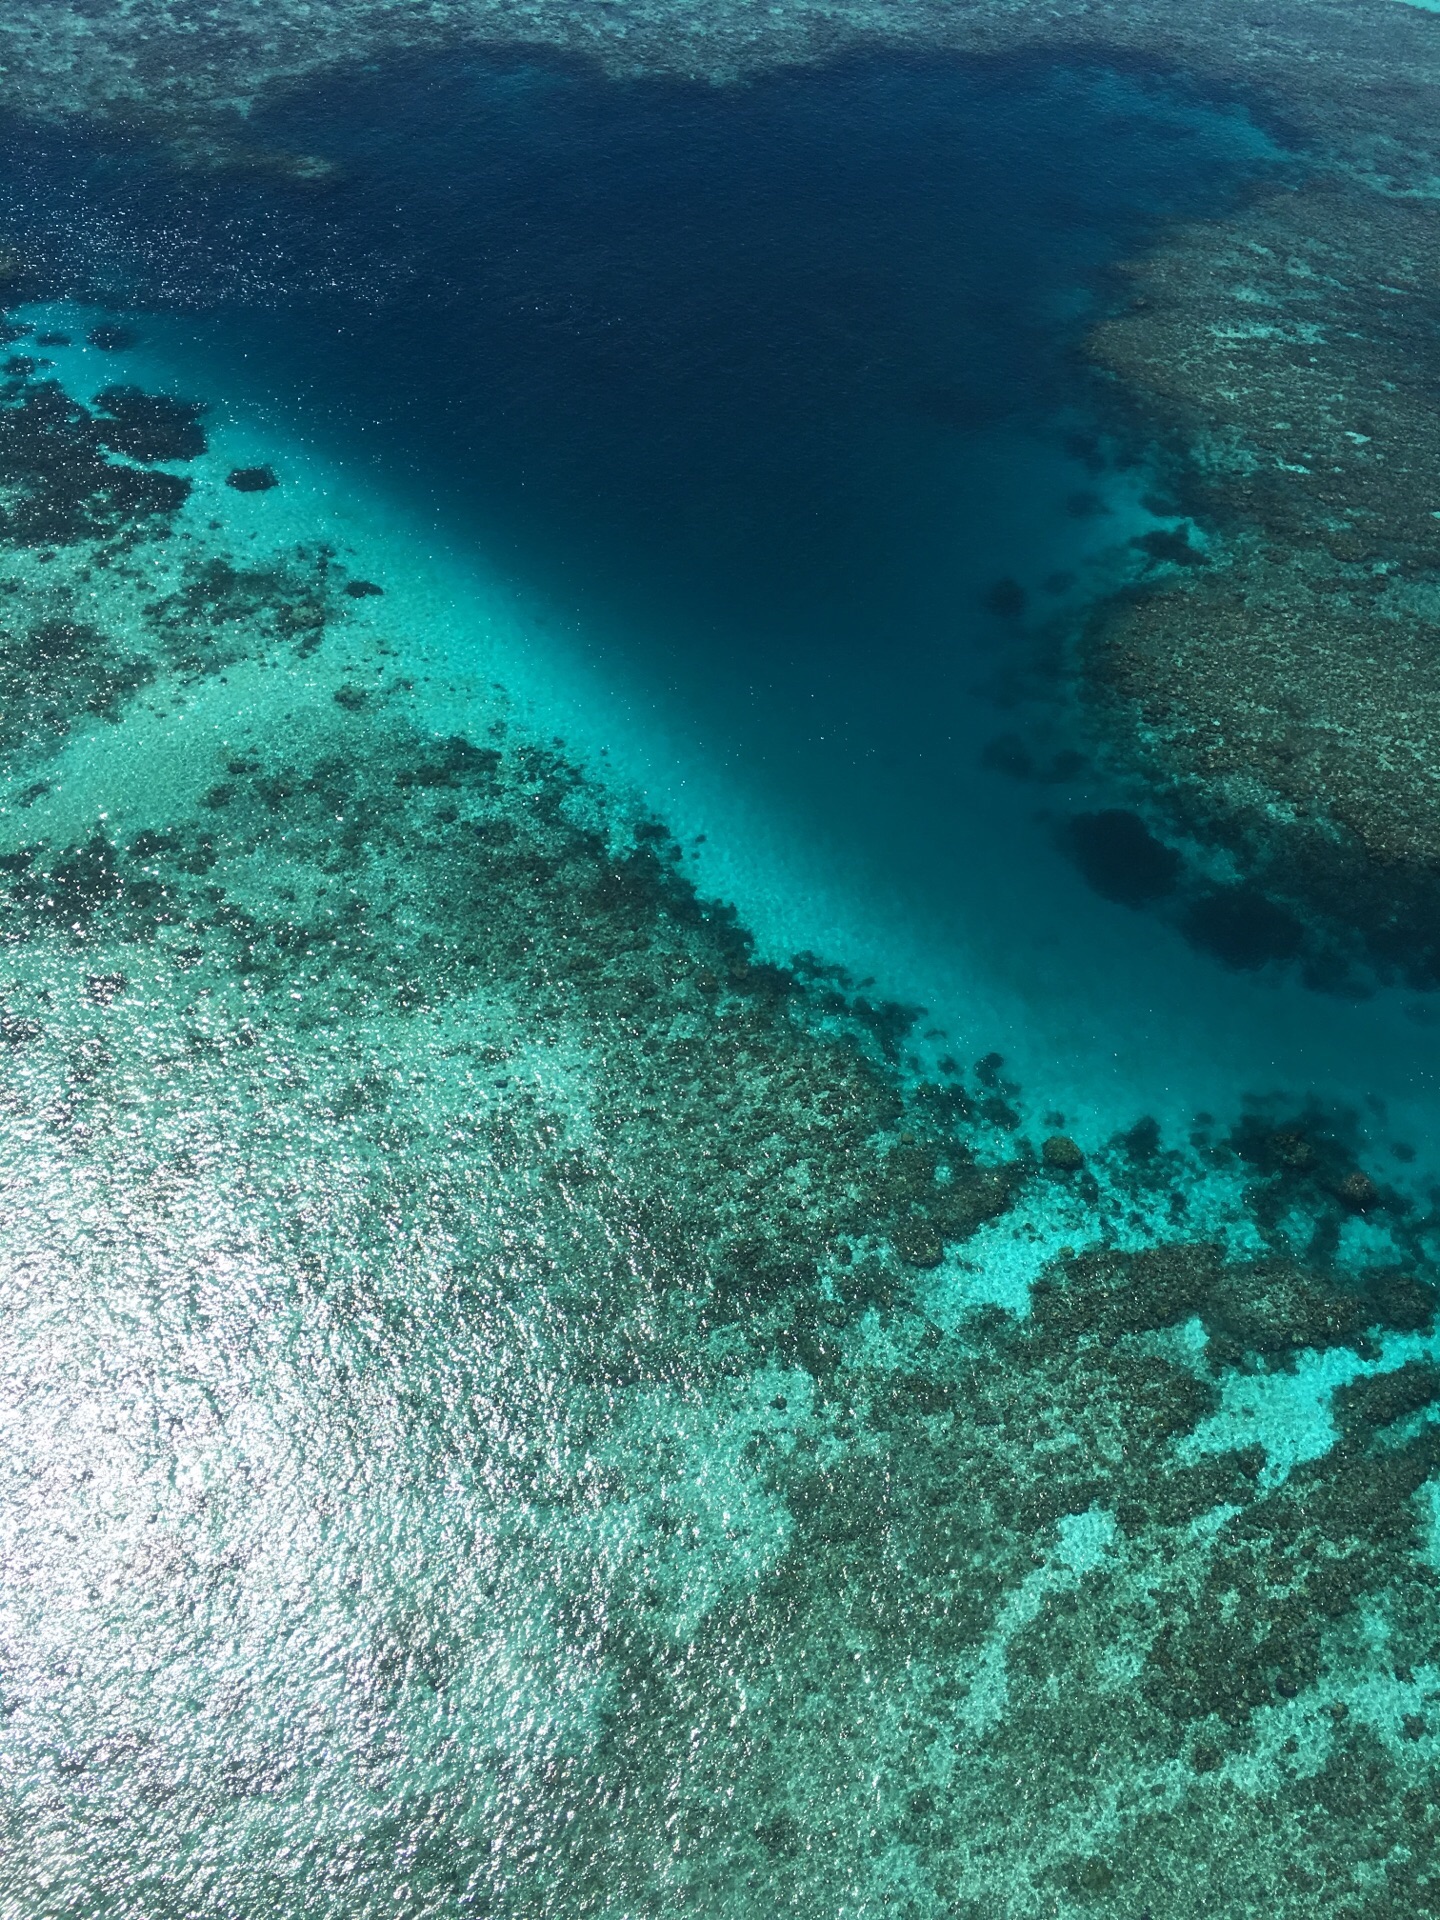 凯恩斯与大堡礁活力6日游 | 澳大利亚昆士兰旅游官方网站